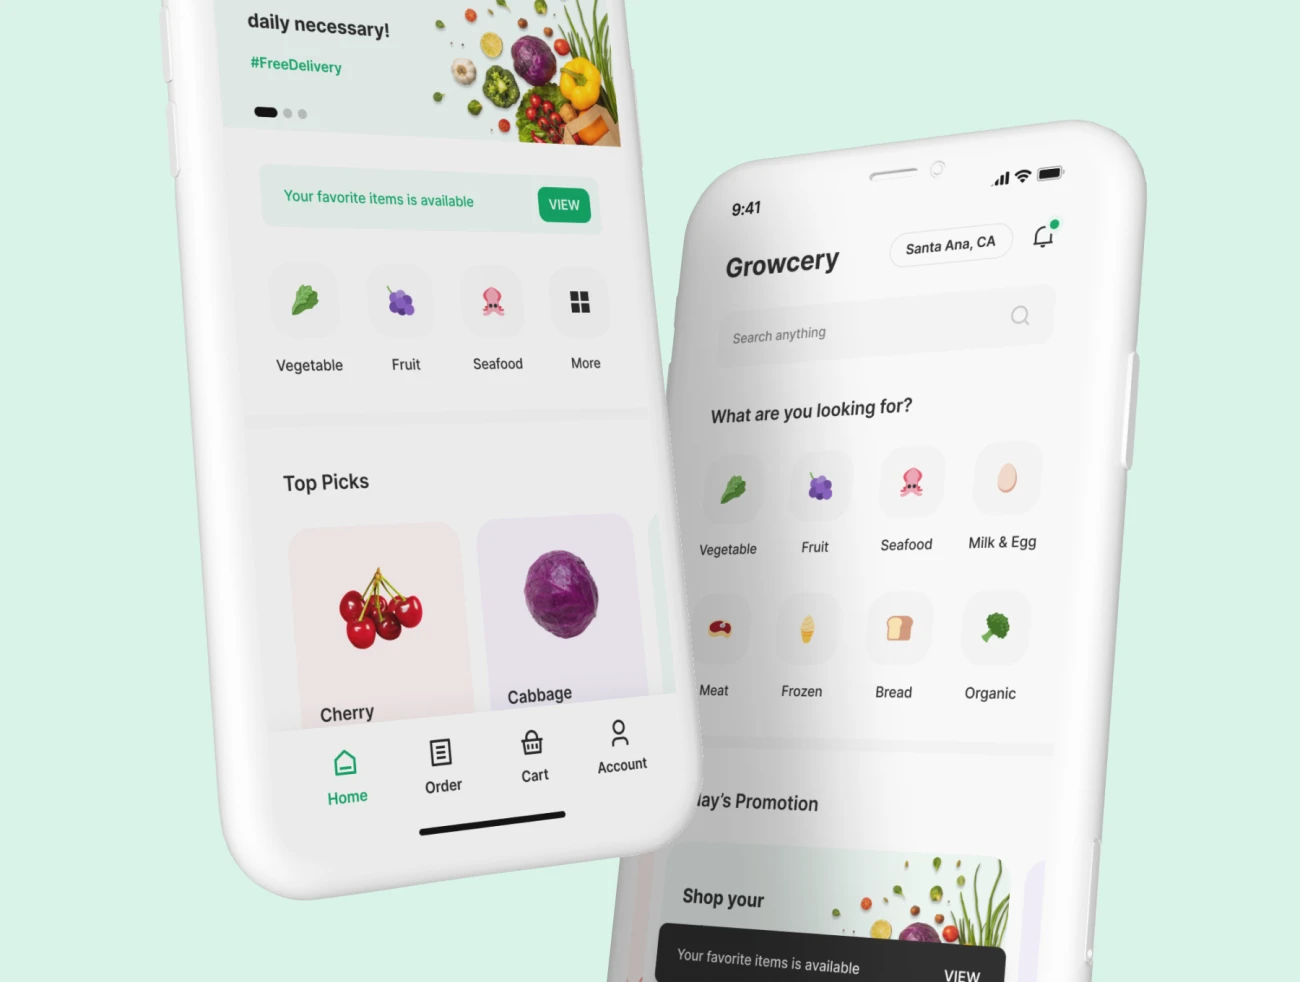 70屏高质量蔬菜水果生鲜日用百货采购应用UI设计套件素材 Growcery – Grocery App UI Kit .figma插图13